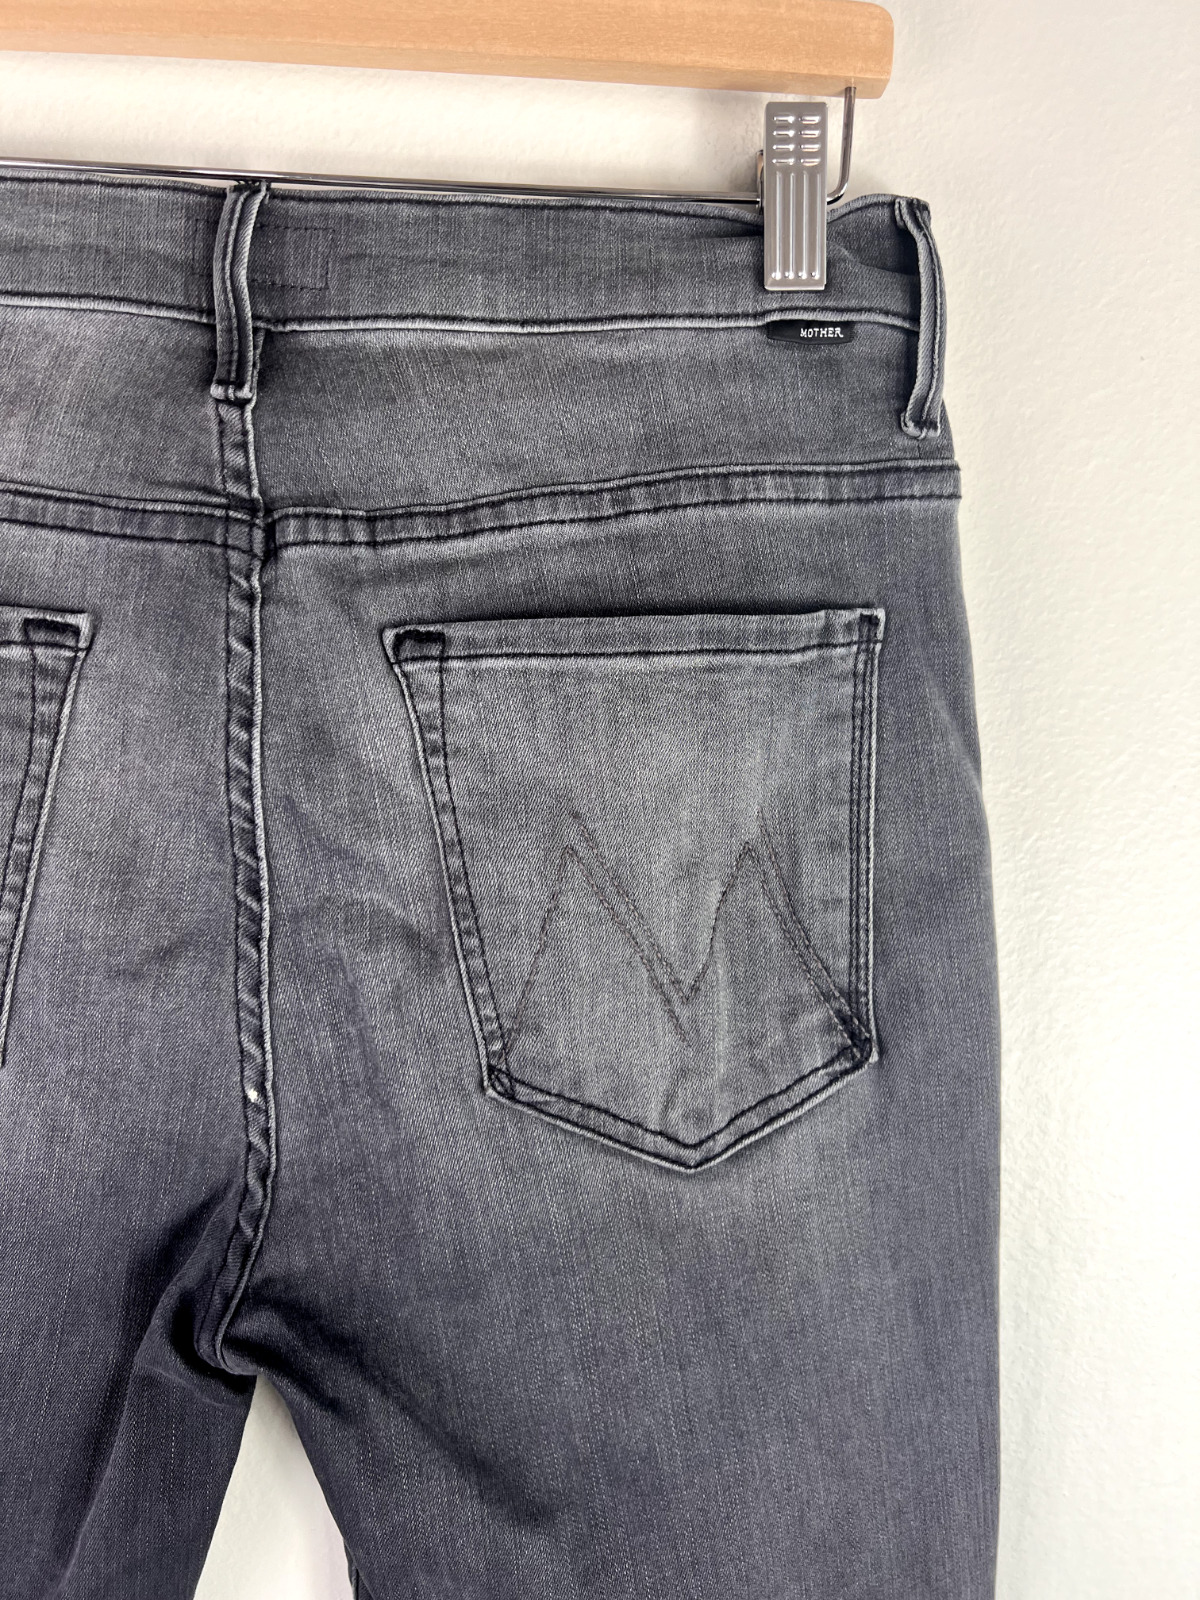 Mother Jeans 30 Insider Crop Step Fray Gray Black… - image 10